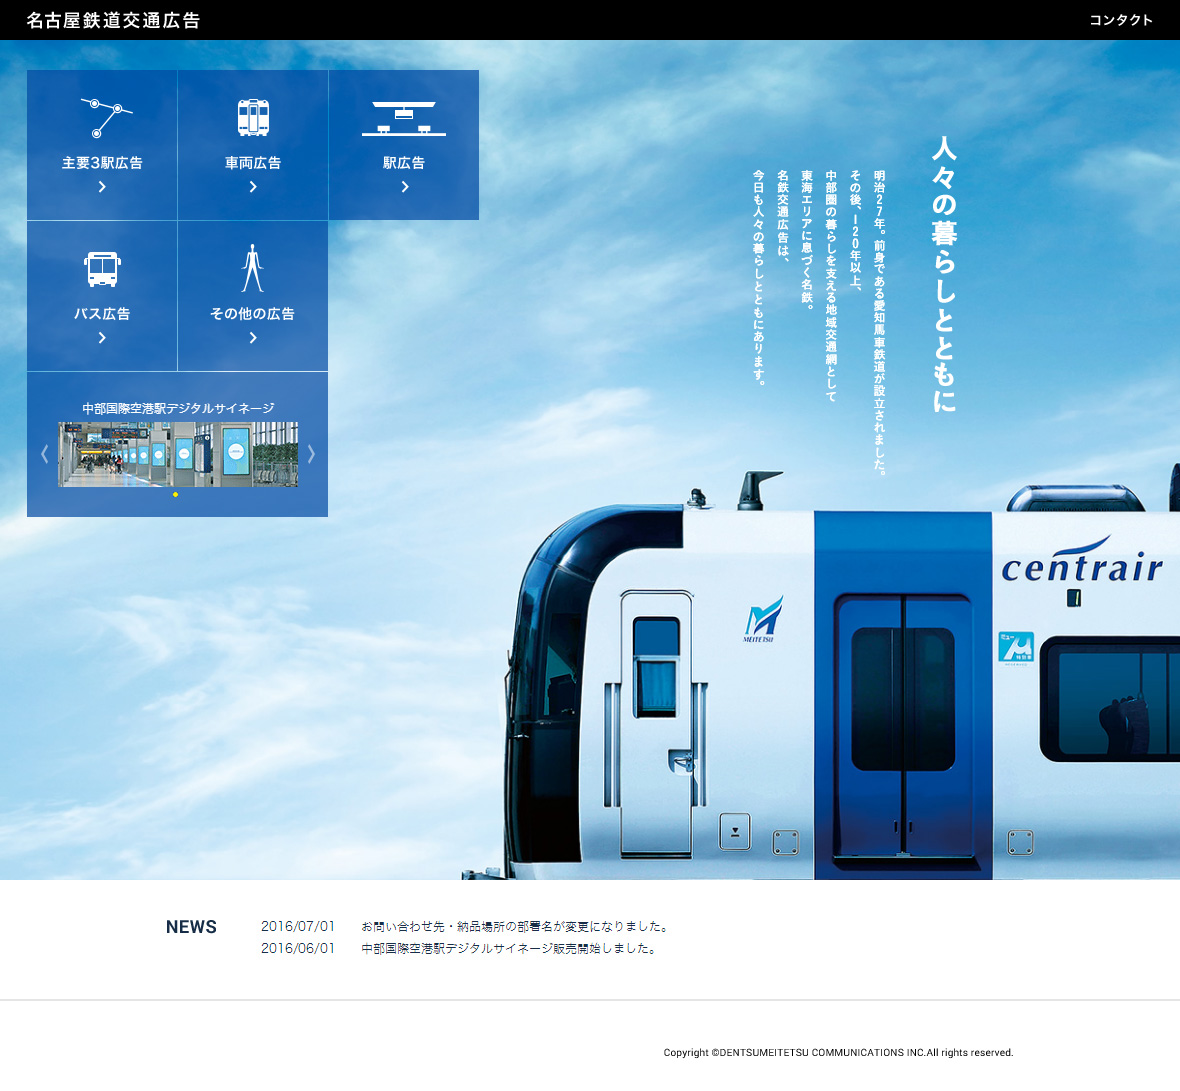 名古屋鉄道交通広告 Sankou Webデザインギャラリー 参考サイト集